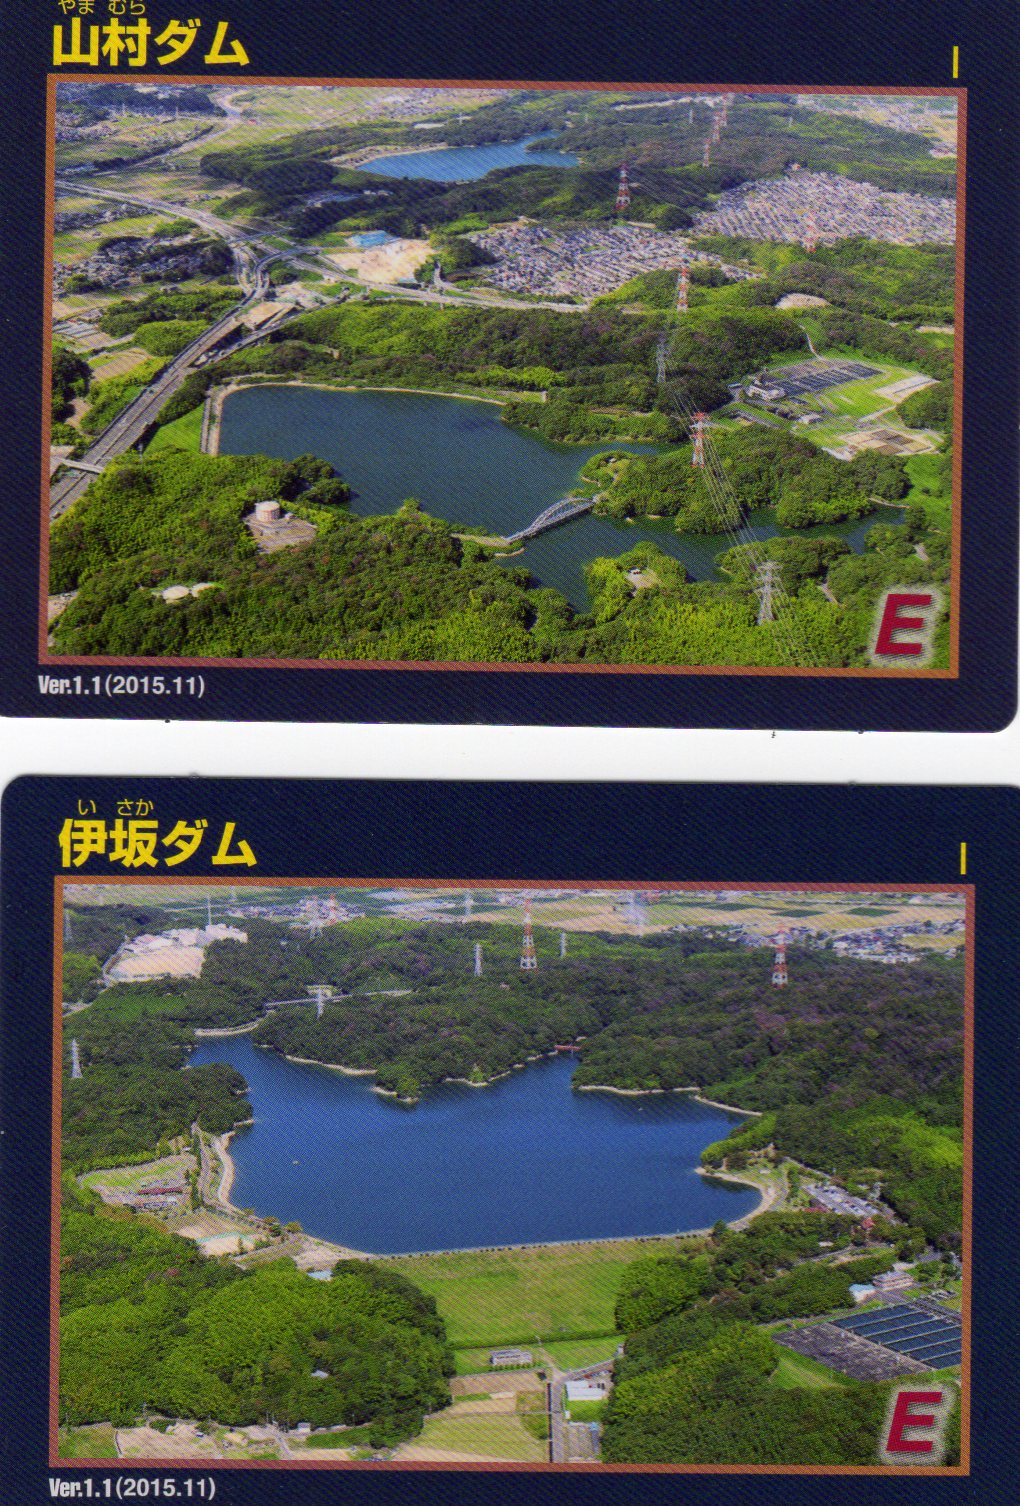 ダムカード  山村ダムの写真の上にある池が伊坂ダムです